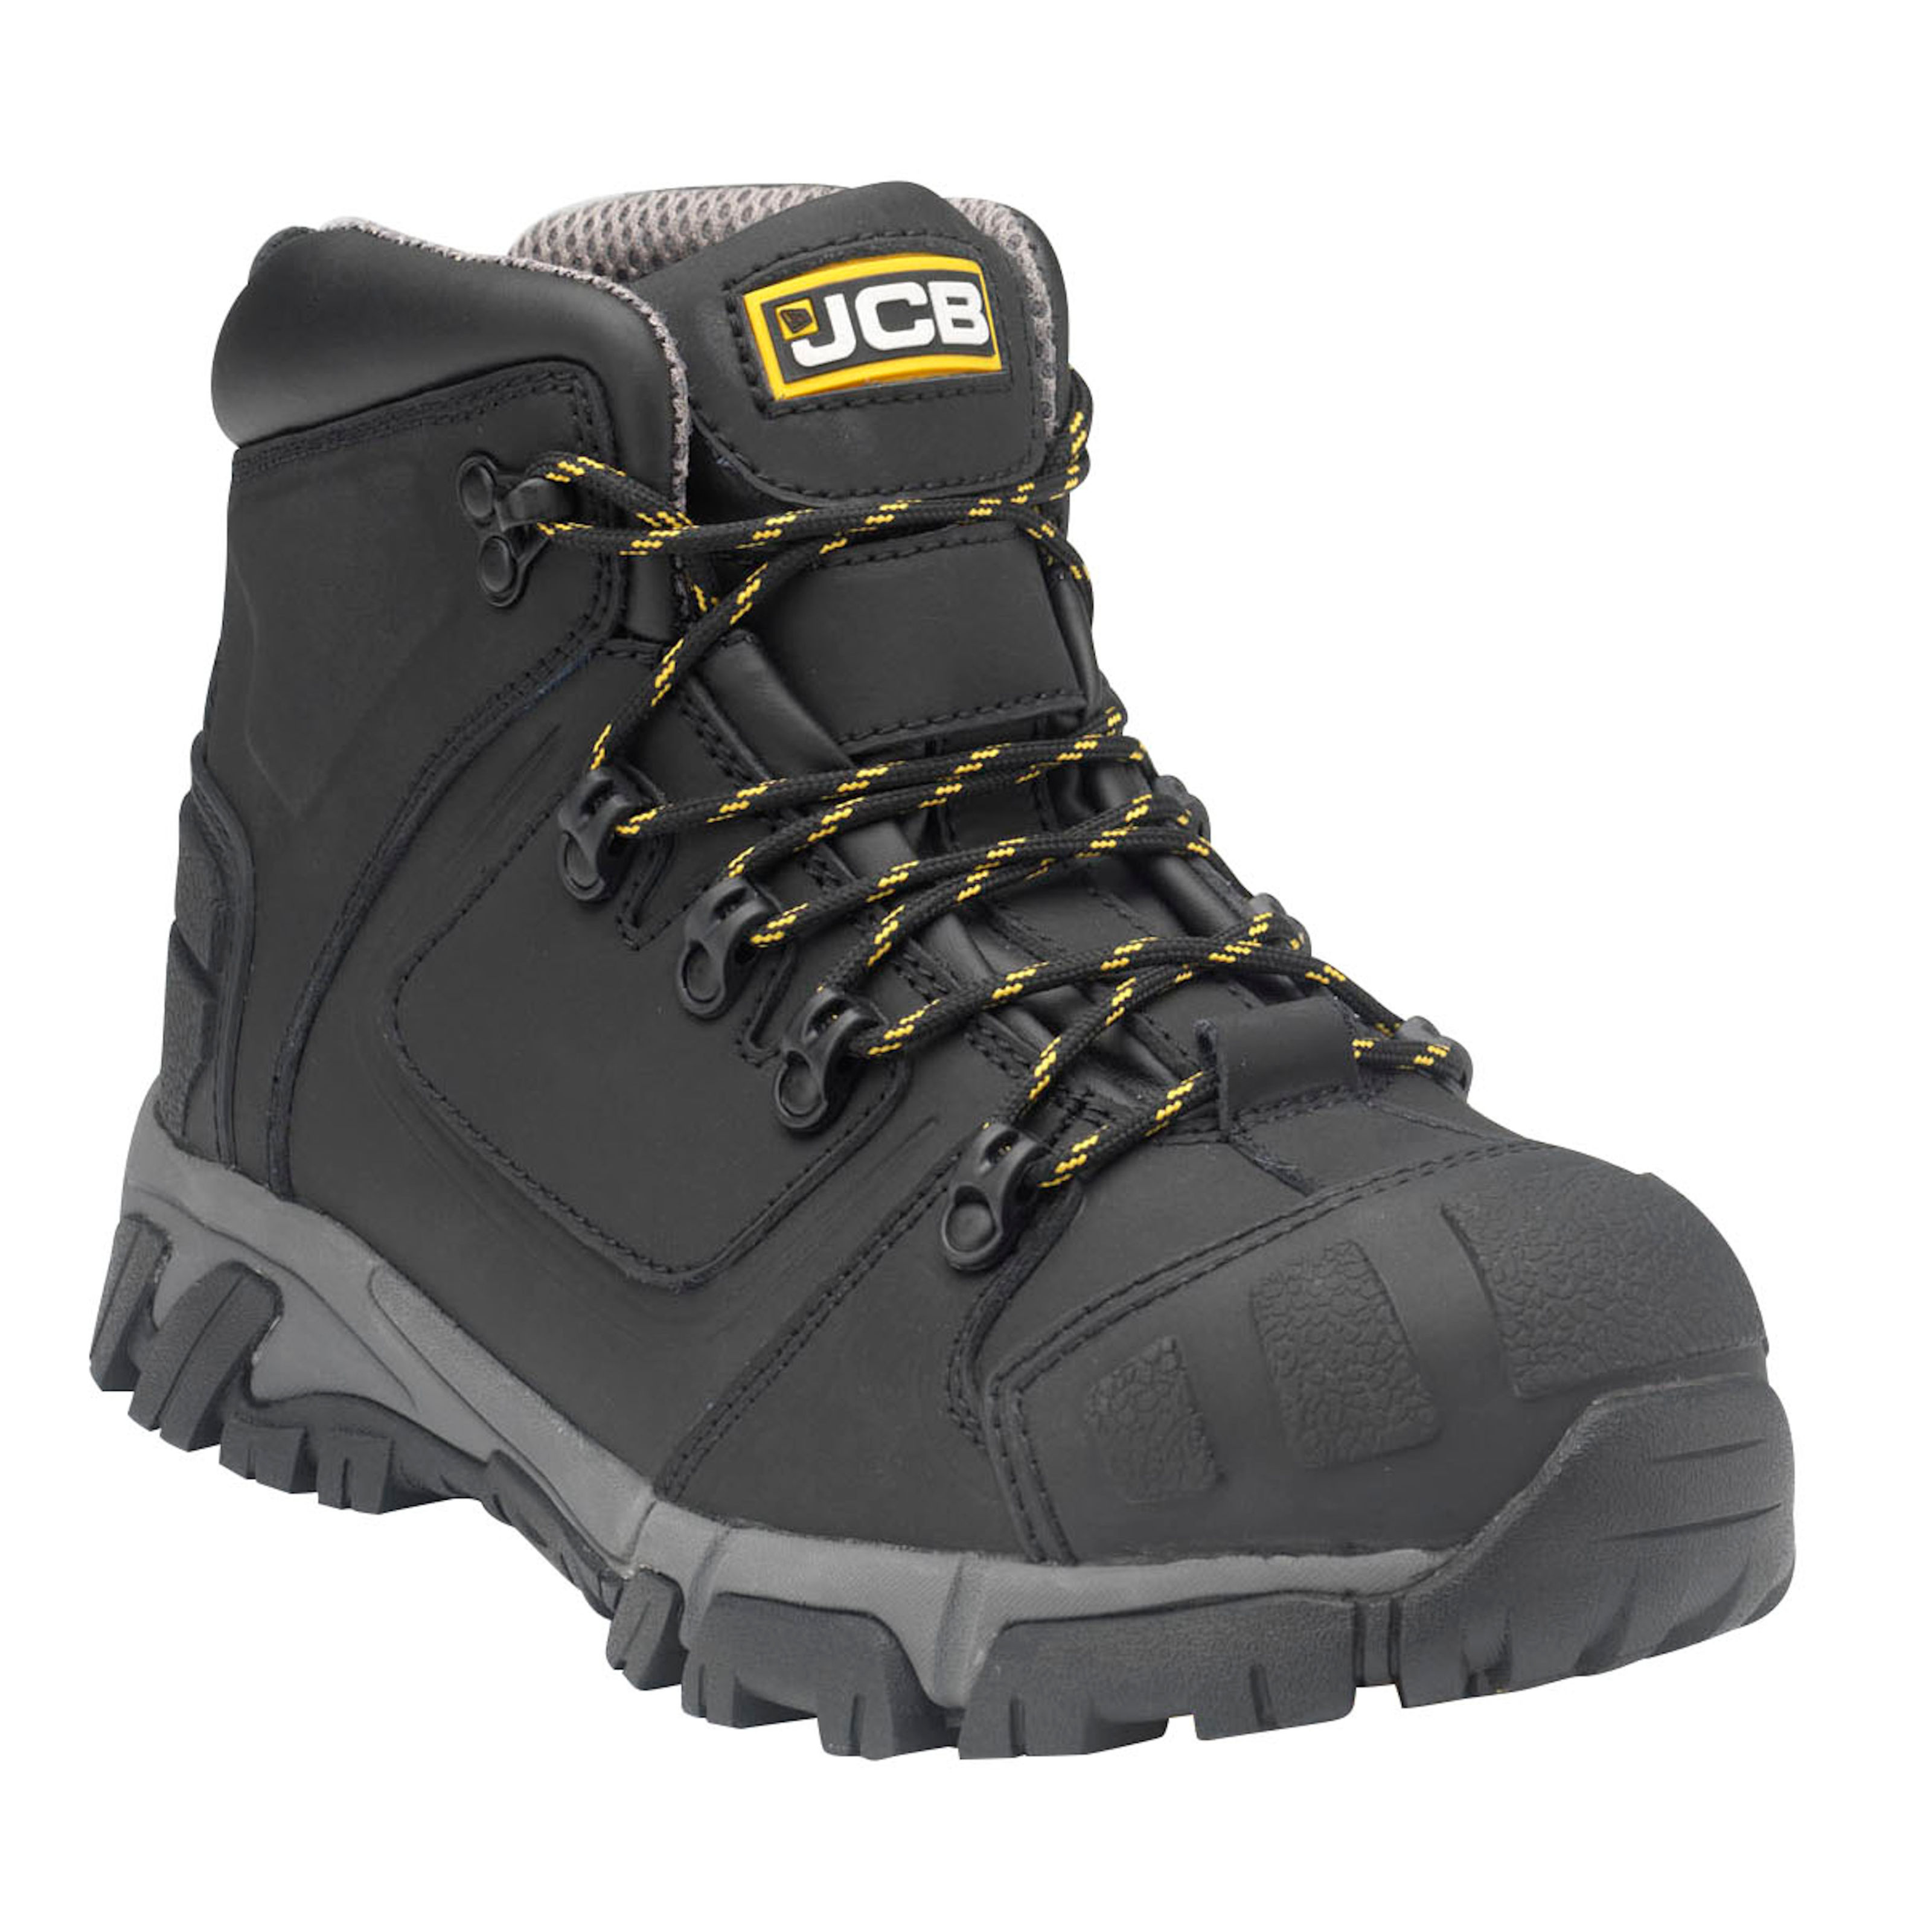 Jcb Steel Toe Cap Boots | sites.unimi.it